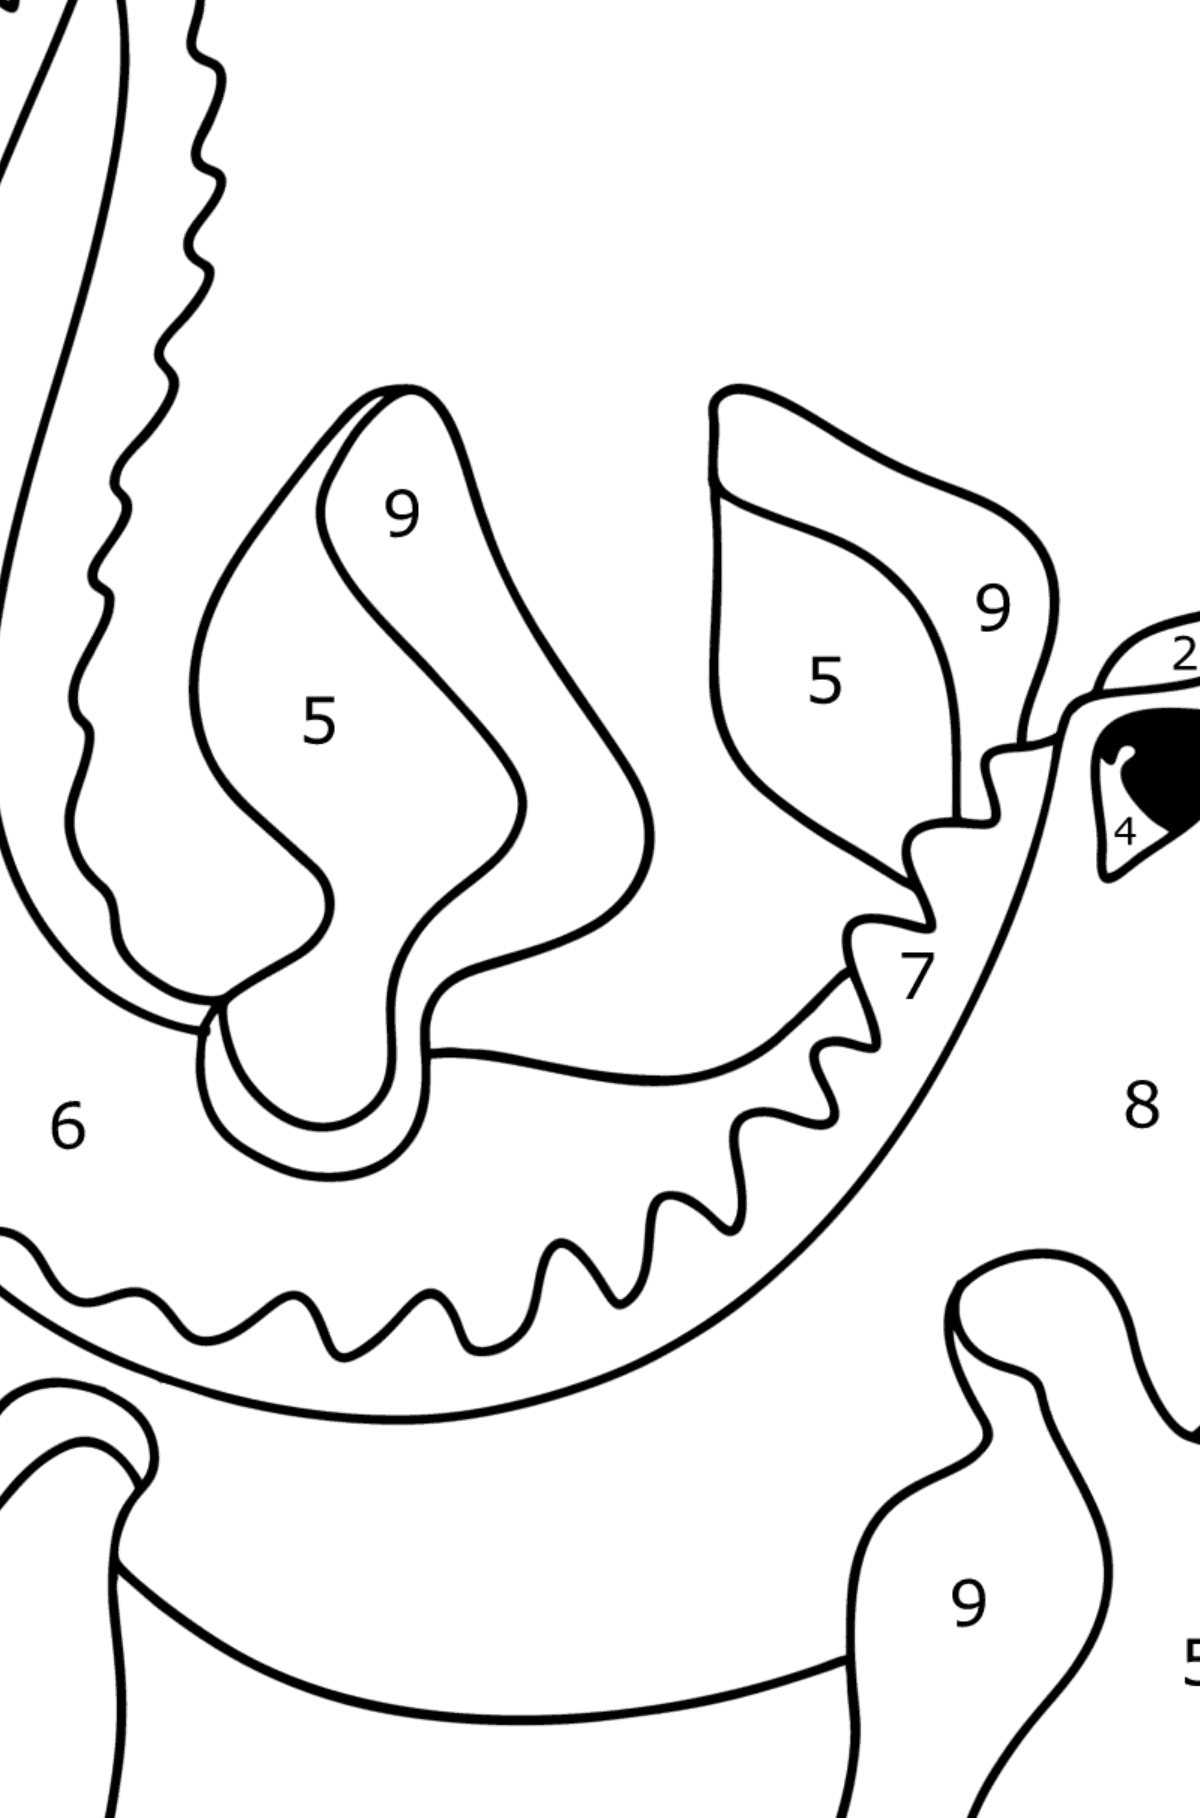 Boyama sayfası mosasaurus - Sayılarla Boyama çocuklar için